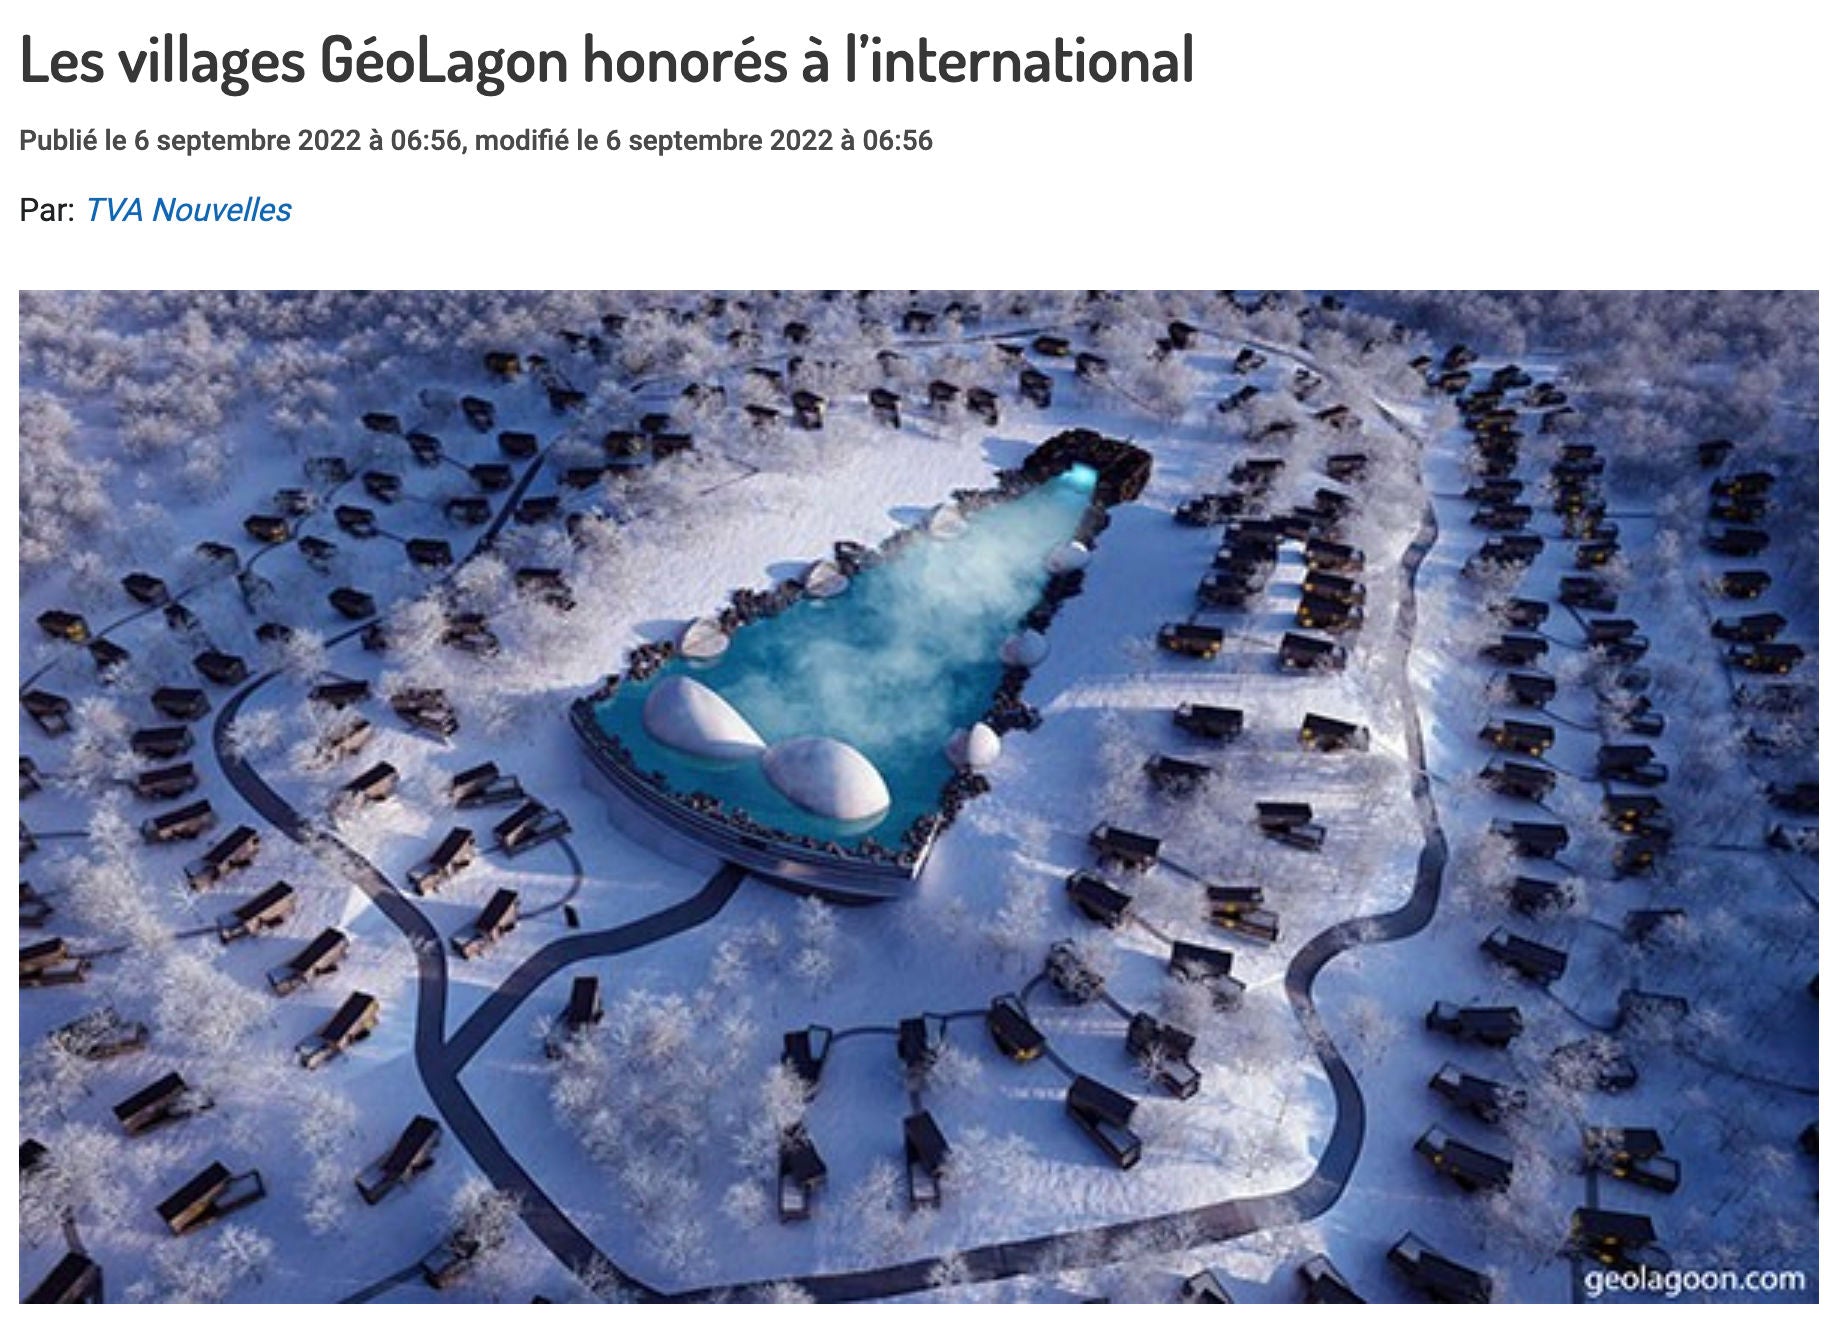 Les villages GéoLagon honorés à l’international